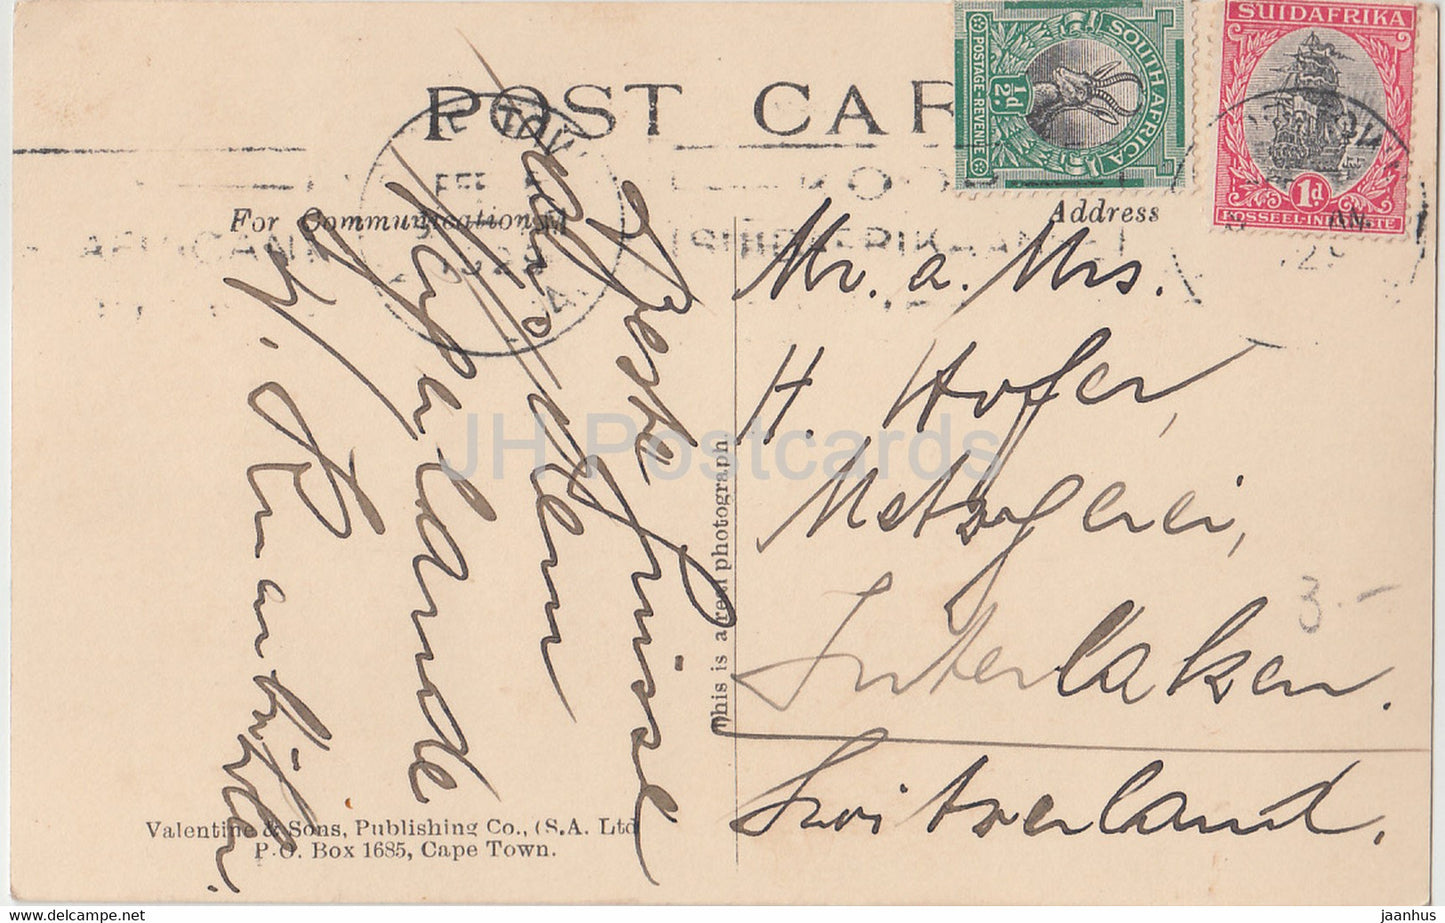 Kapstadt – Postamt – Adderley – 501447 – alte Postkarte – Südafrika – gebraucht